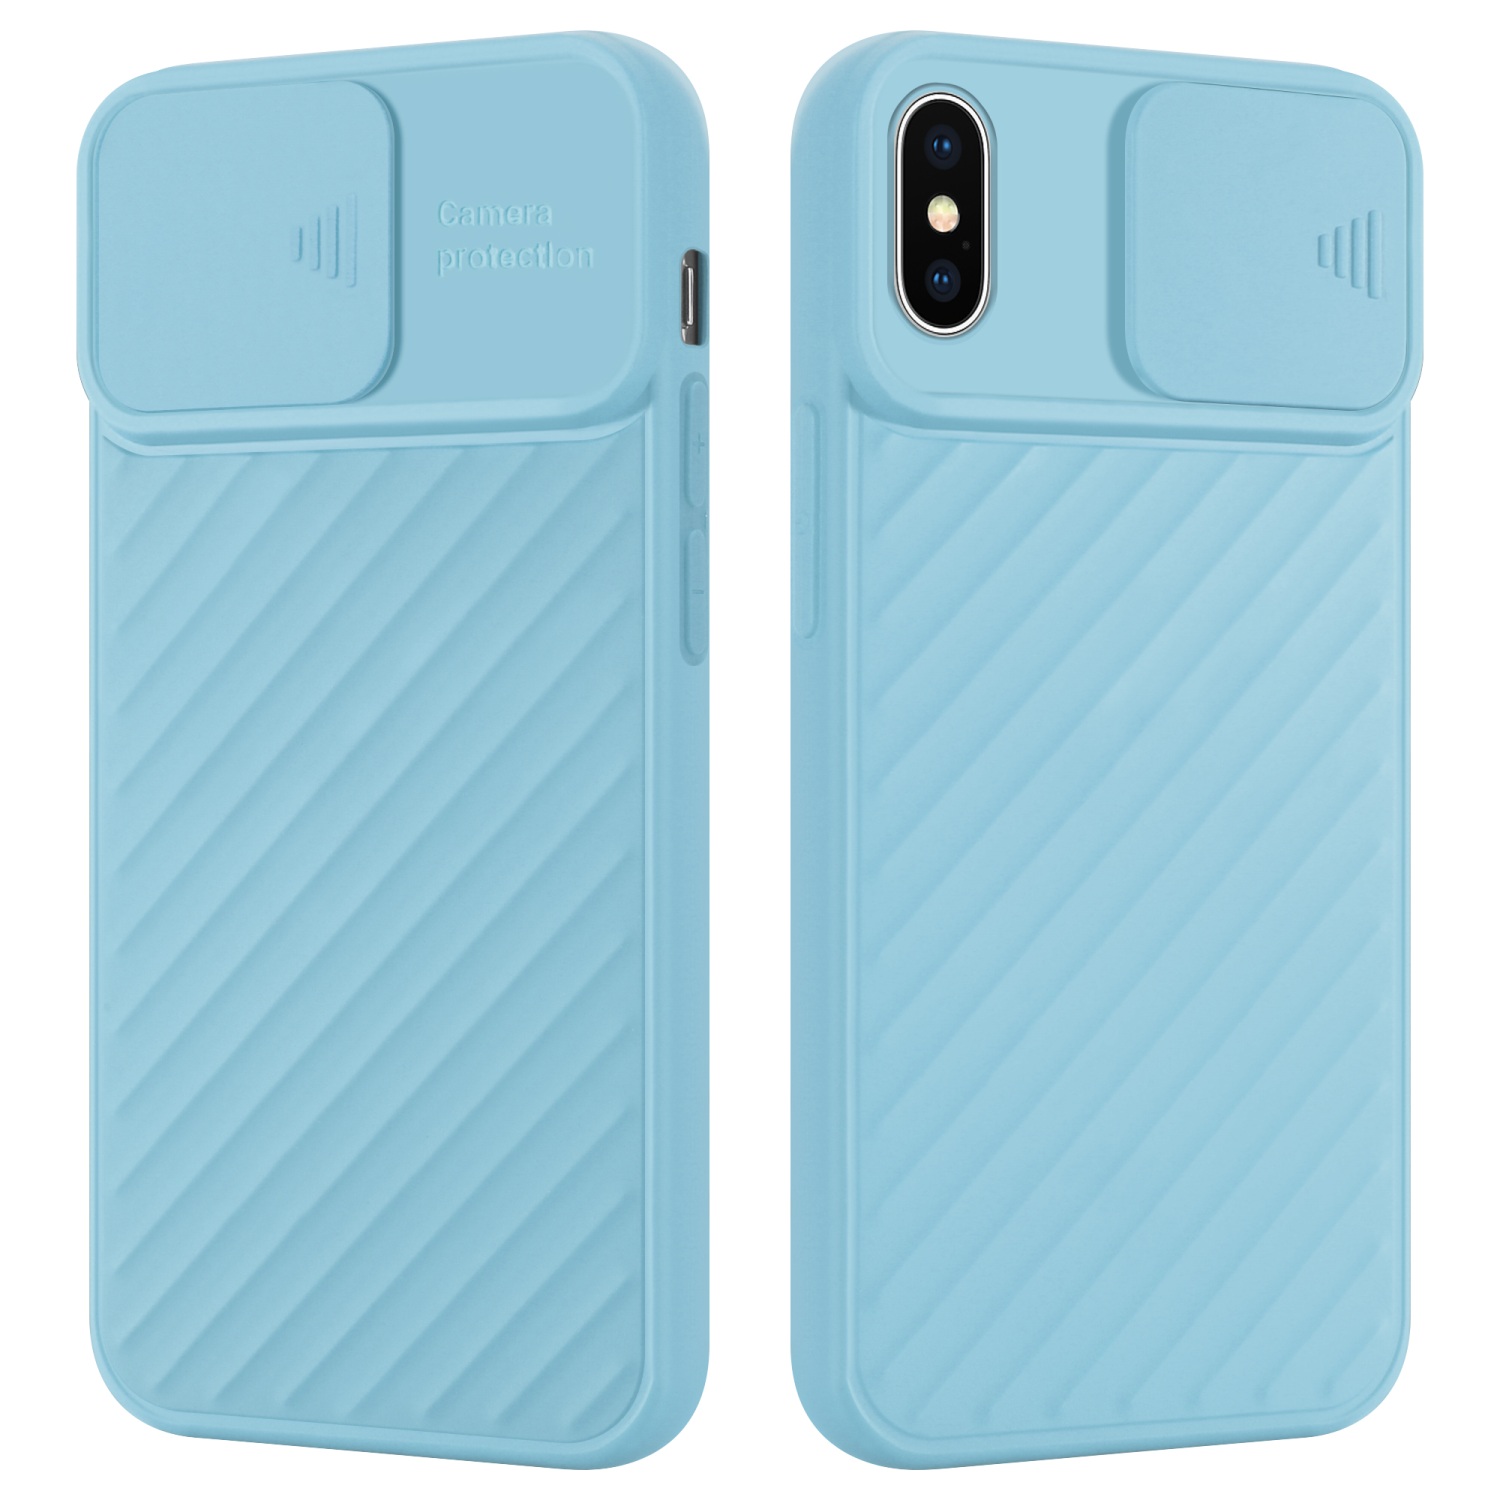 Coque pour Apple iPhone X / XS en Mat Turquoise Housse de protection Étui en silicone TPU flexible et avec protection pour appareil photo